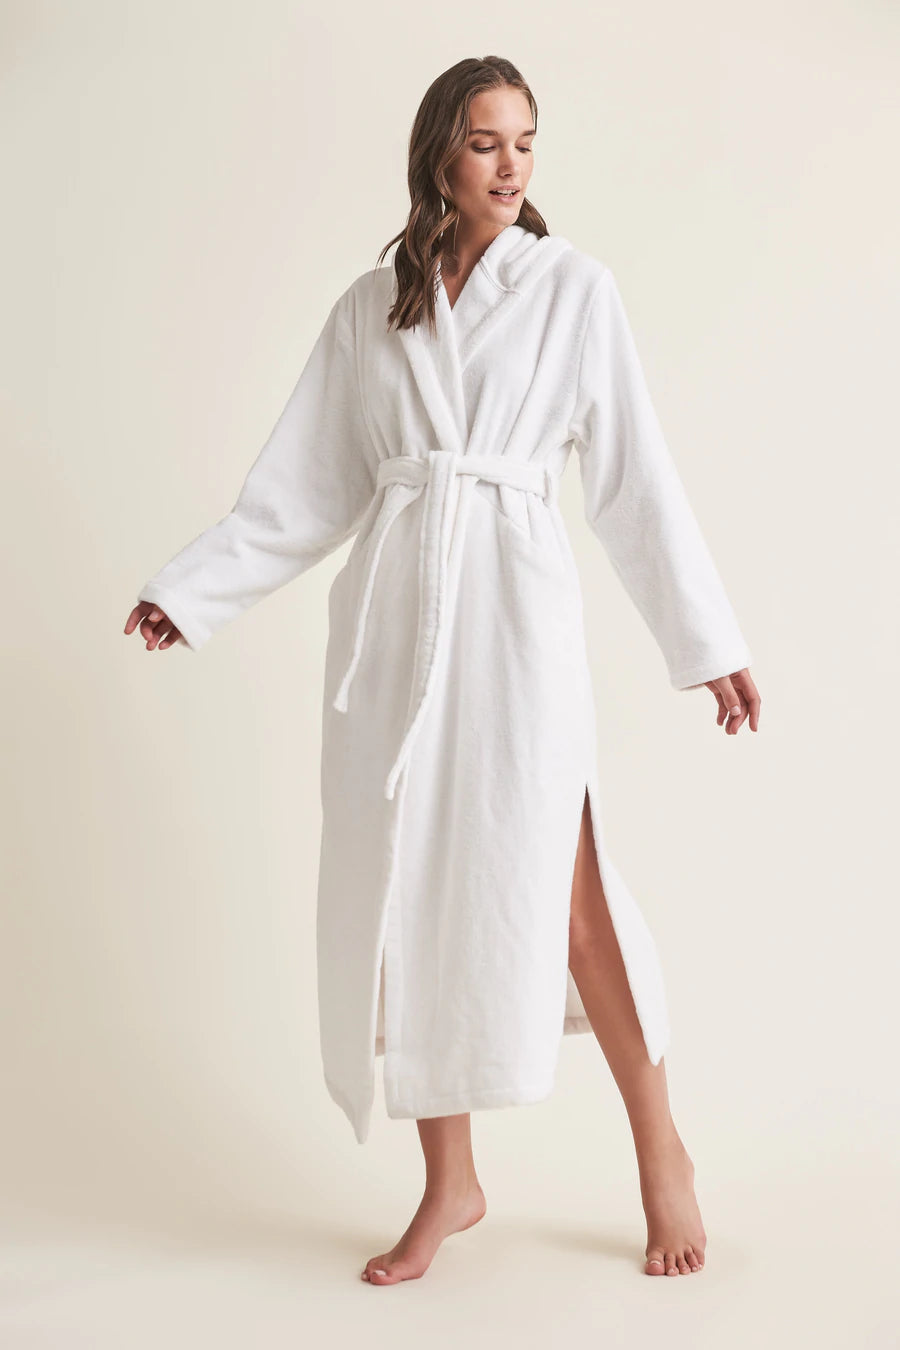 Skin Hamam Spa Robe in White